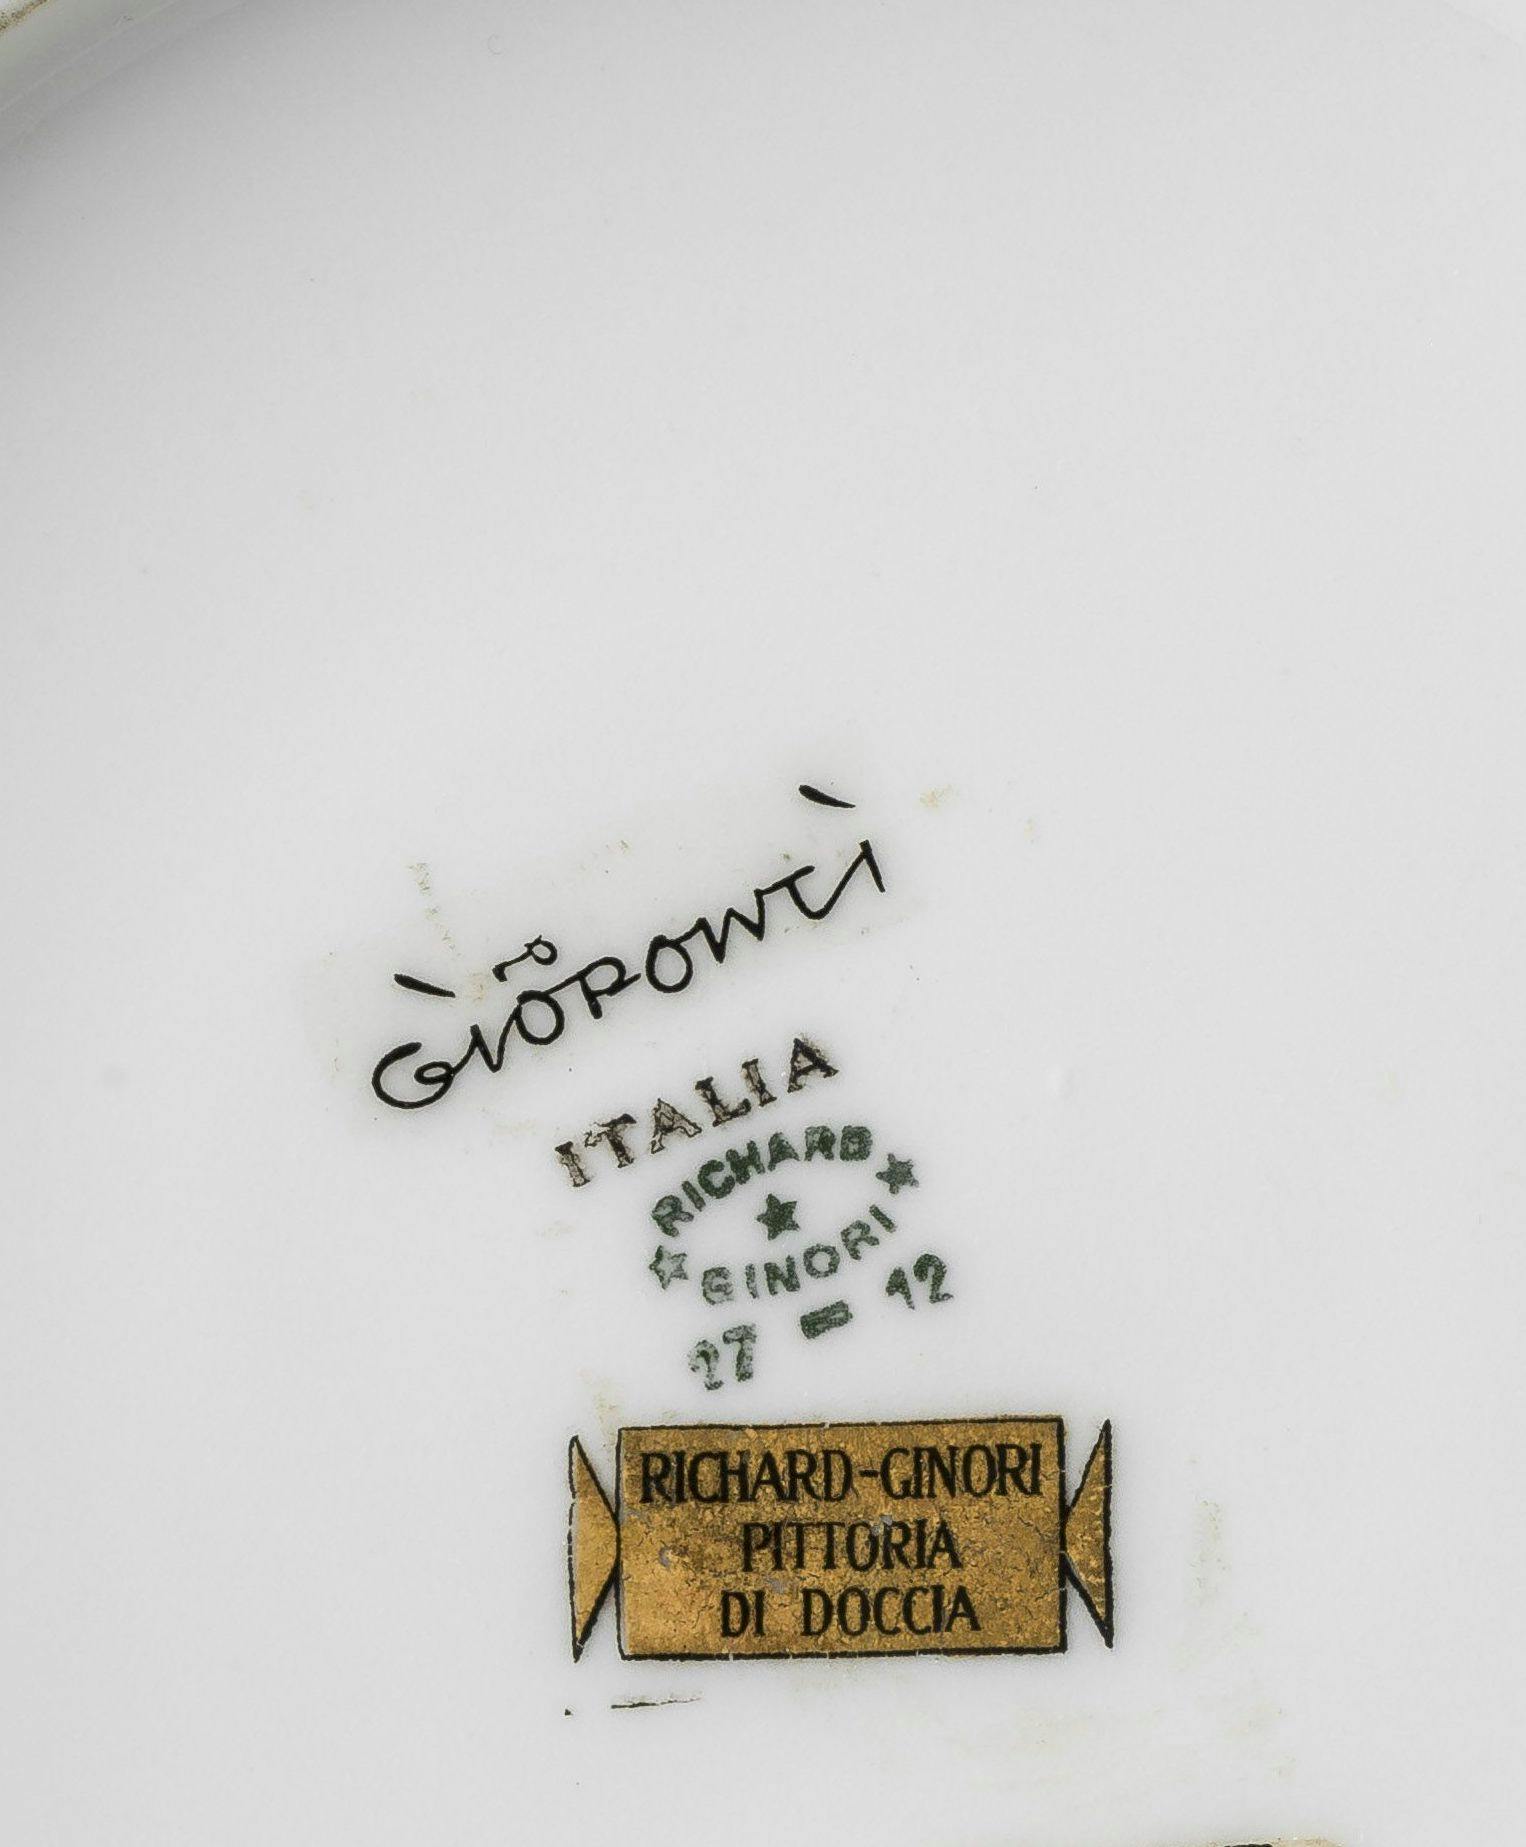 scritta Gio Ponti in nero, timbro Richard Ginori in verde, cartella dorata